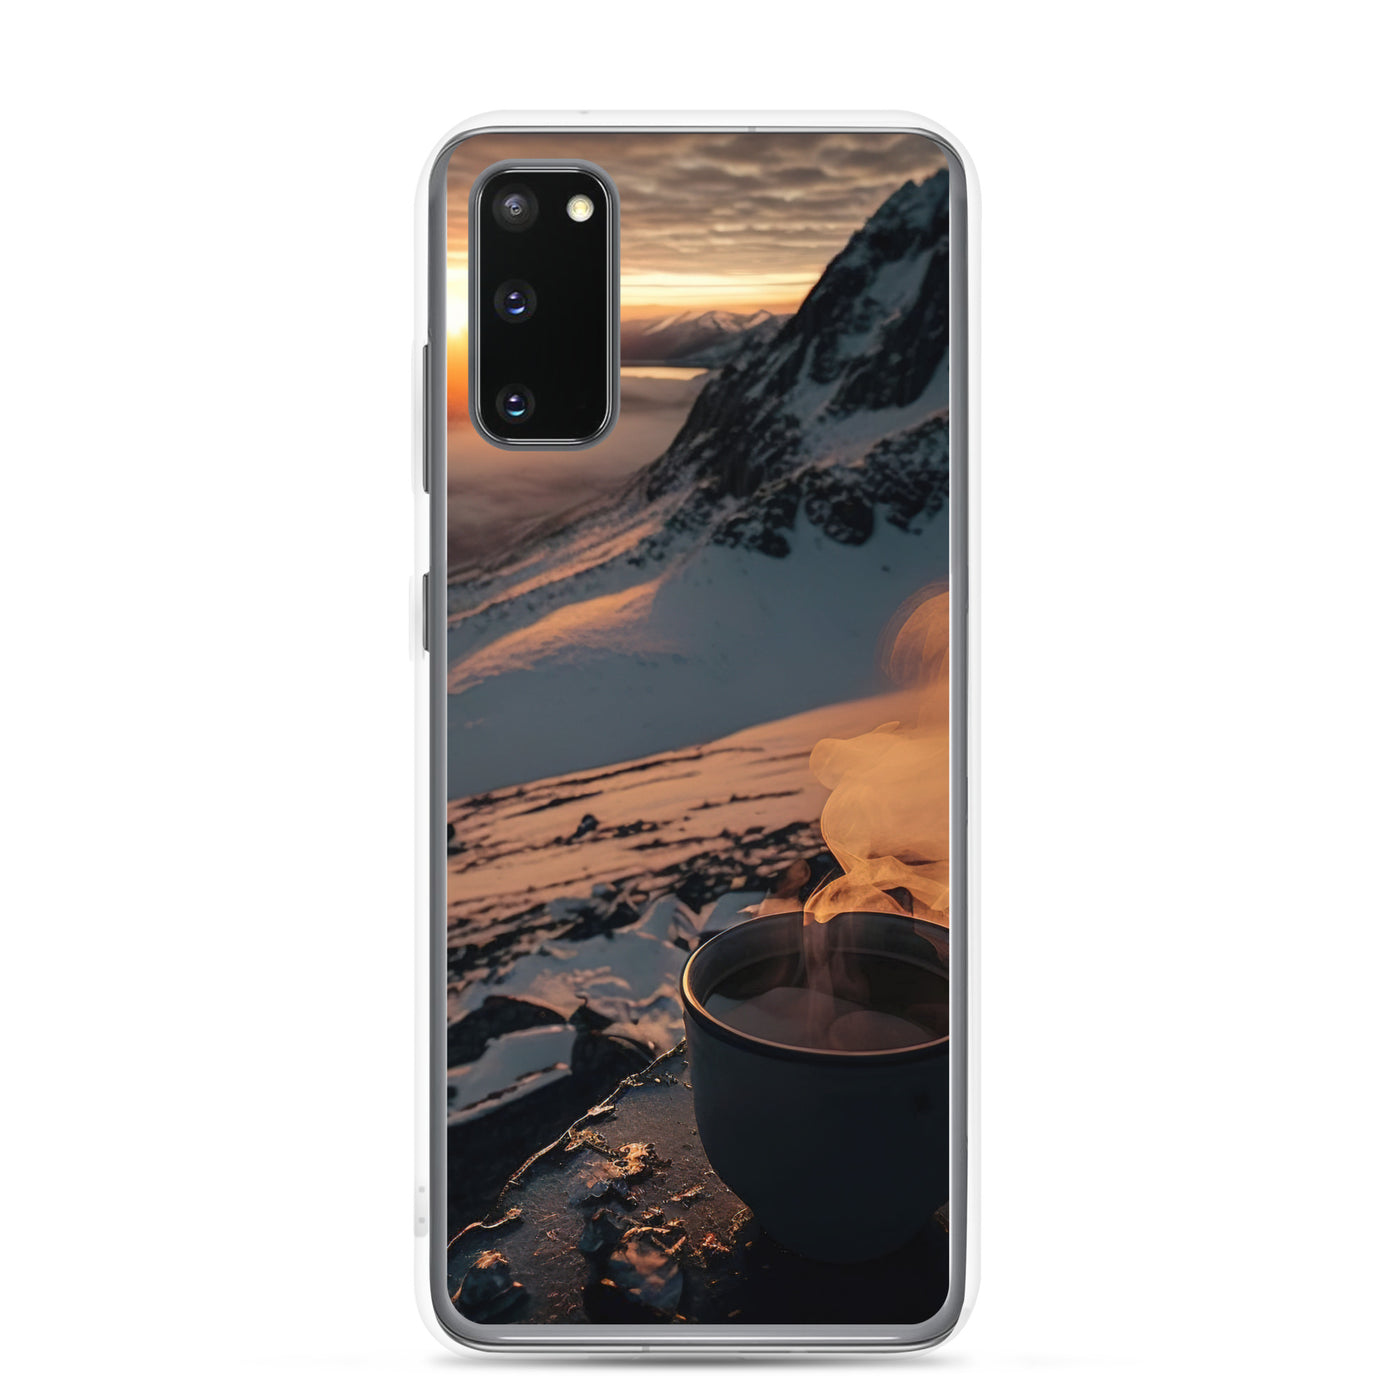 Heißer Kaffee auf einem schneebedeckten Berg - Samsung Schutzhülle (durchsichtig) berge xxx Samsung Galaxy S20